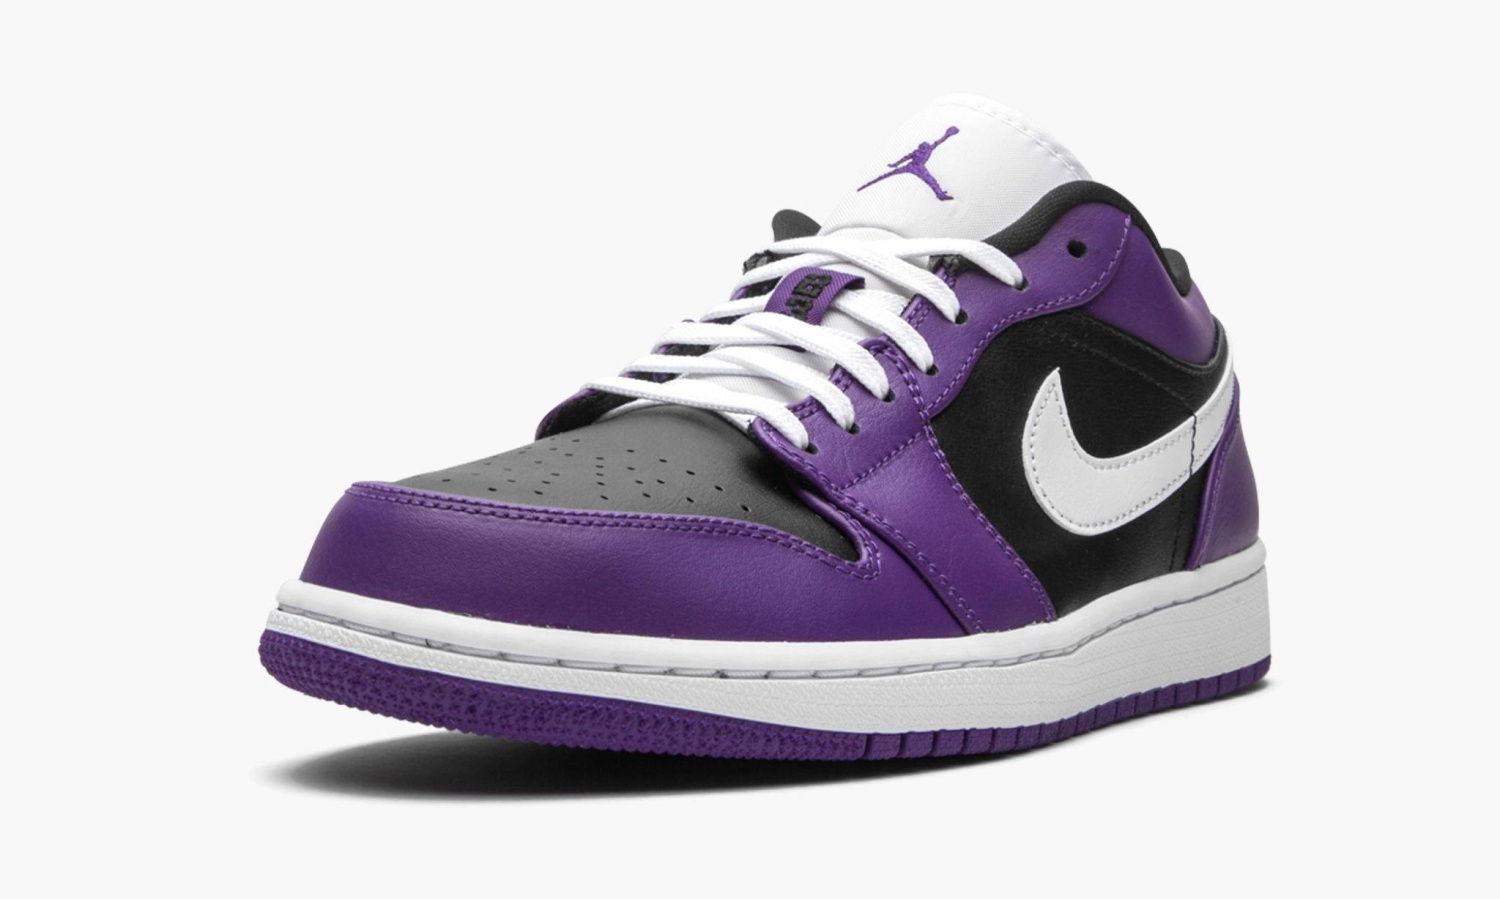 фото Jordan 1 Low "Court Purple" (Air Jordan 1 Low)-553558 501